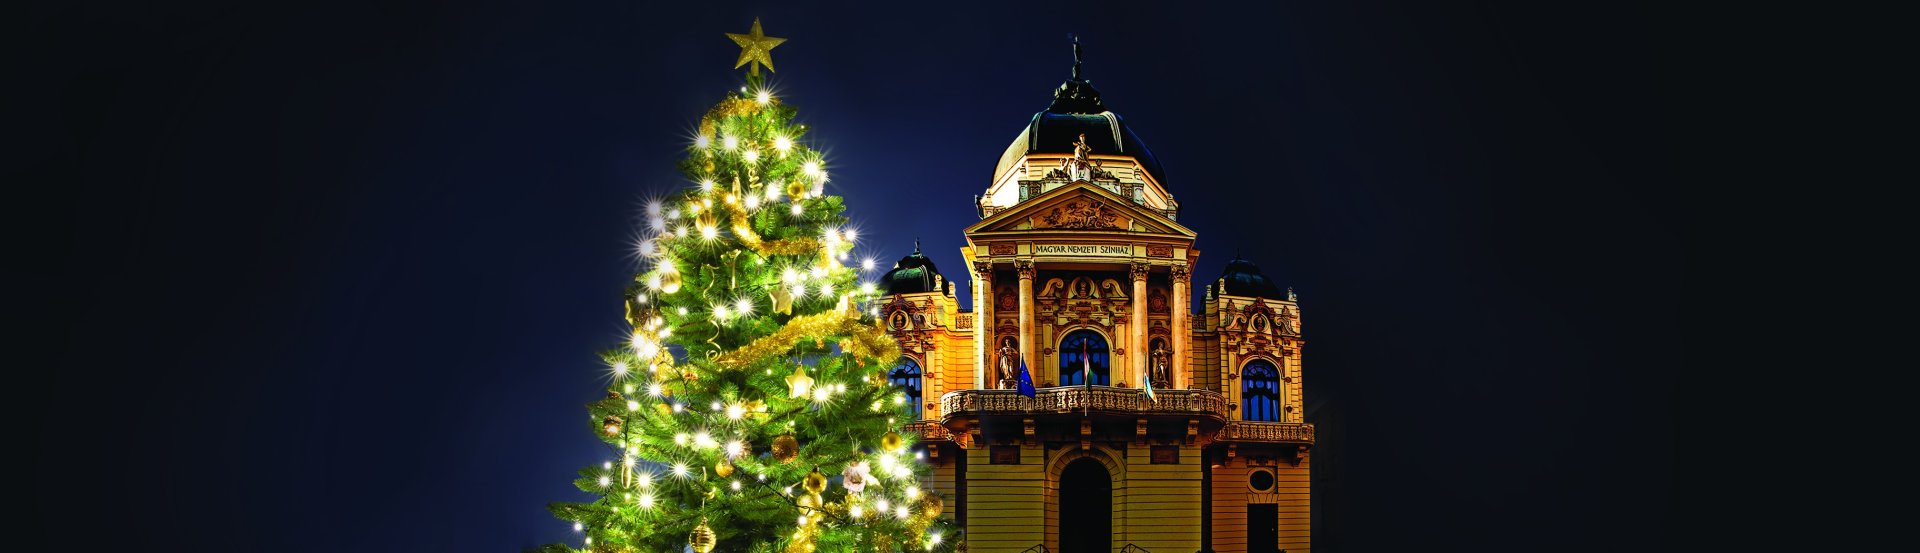 Karácsonyi musical-, operett- és operagála című előadás kiemelt képe a Pécsi Nemzeti Színházból